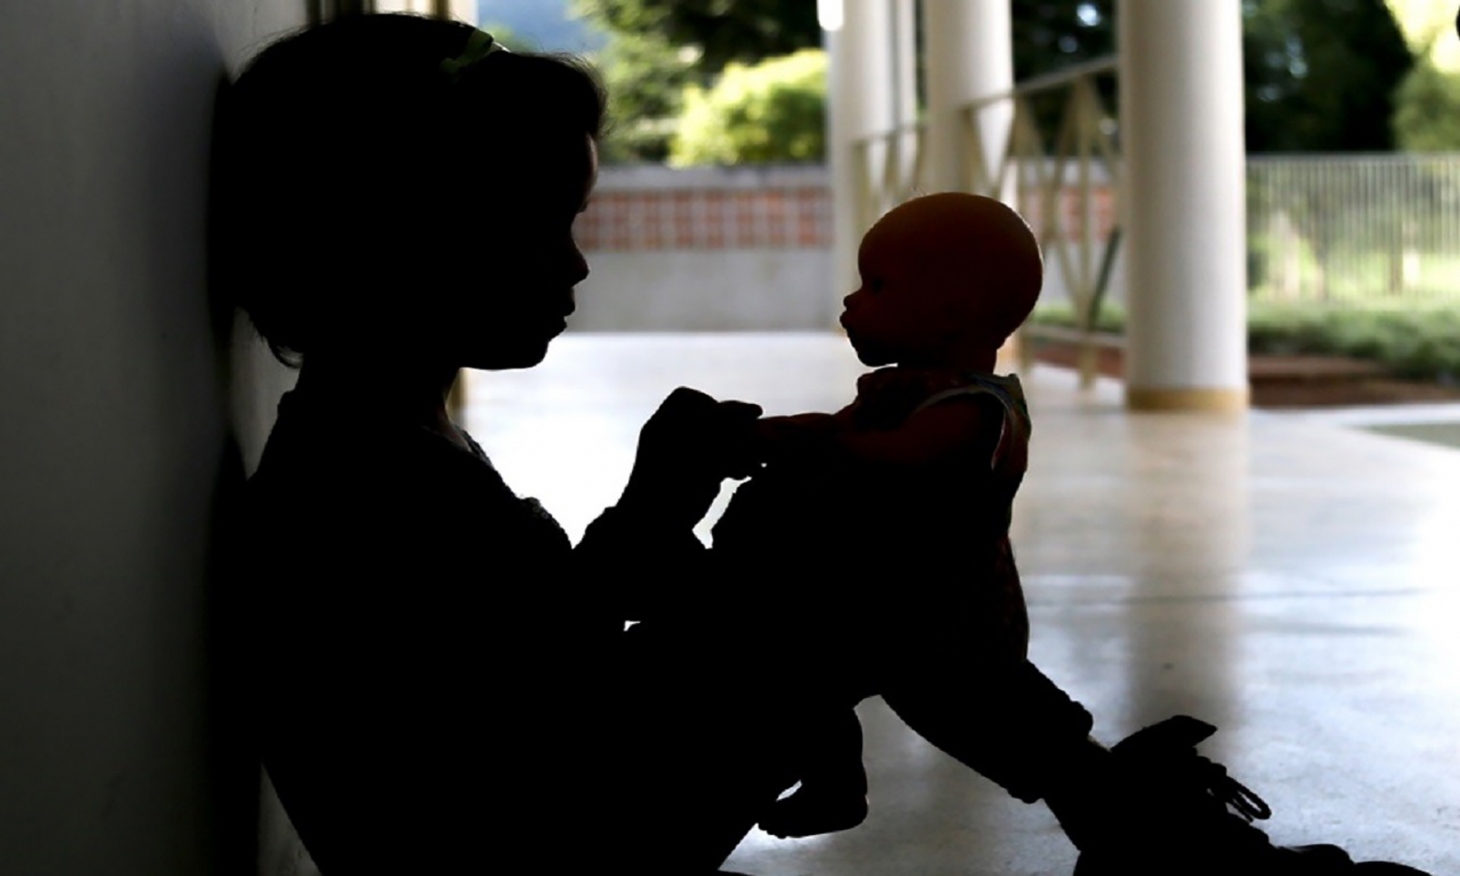 Violência sexual contra crianças e aborto são temas que permanecem nas sombras | Jornal da Orla